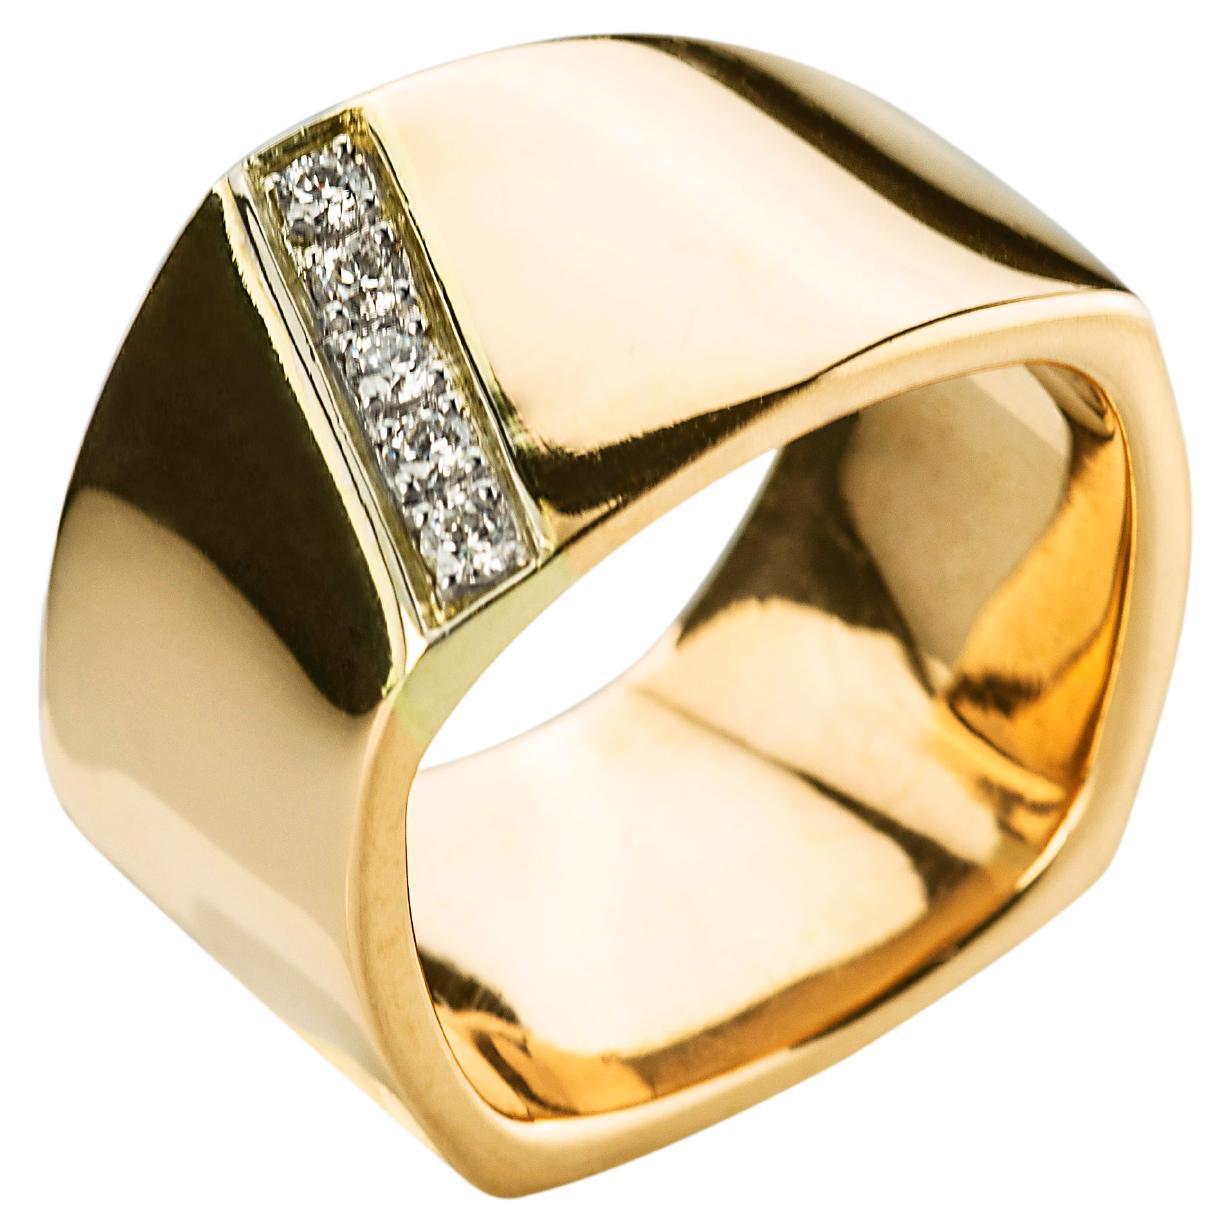 Unisex-Ring aus 18 Karat Gelbgold mit 0,20 Karat weißen Diamanten